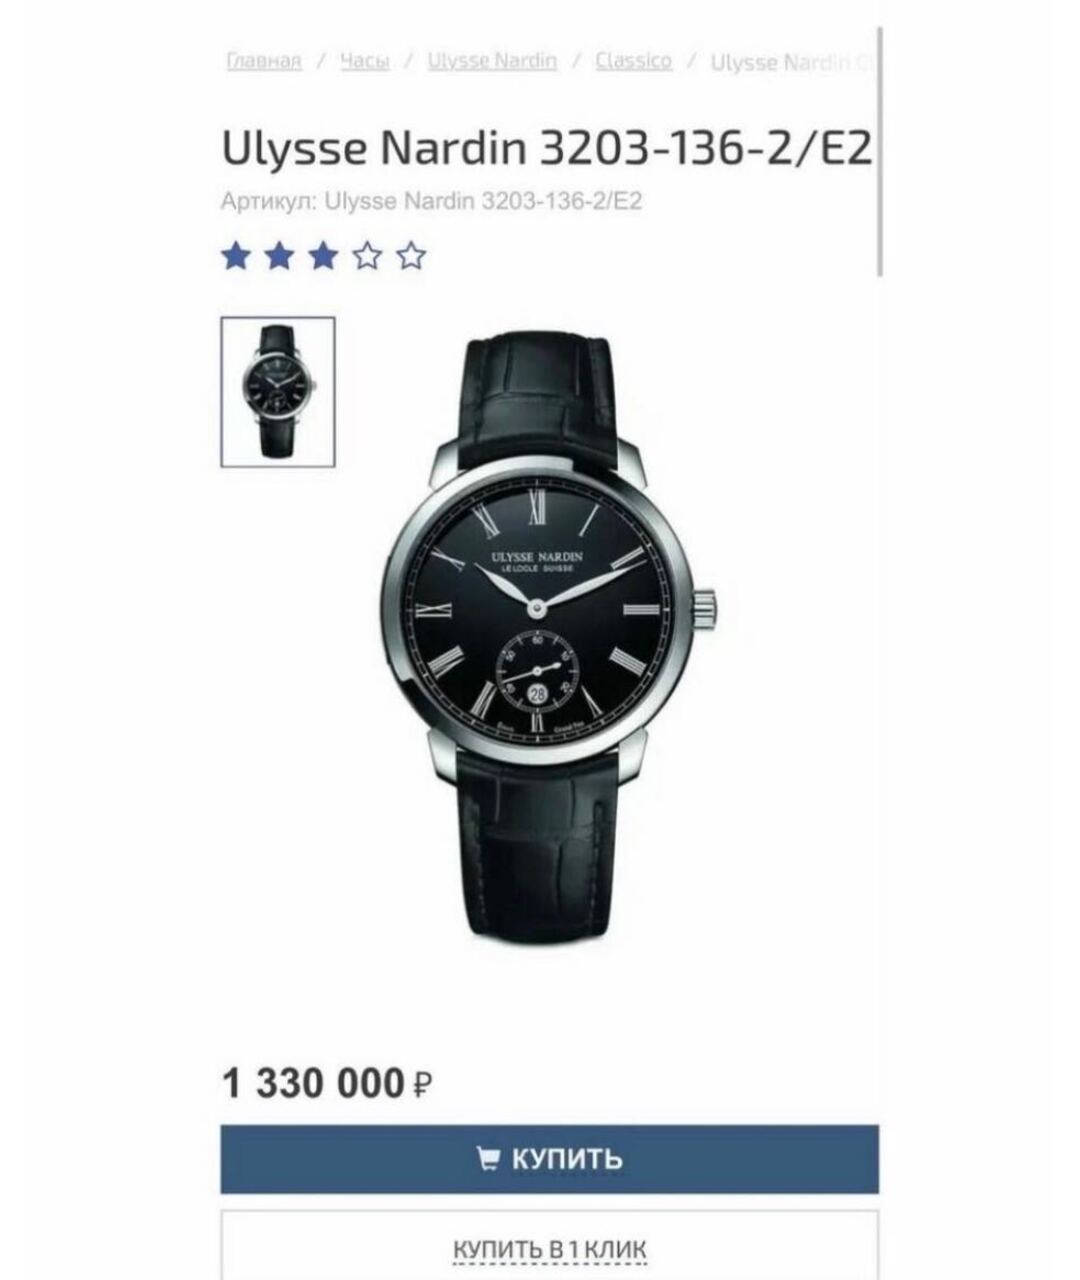 Ulysse Nardin Темно-синие часы, фото 2